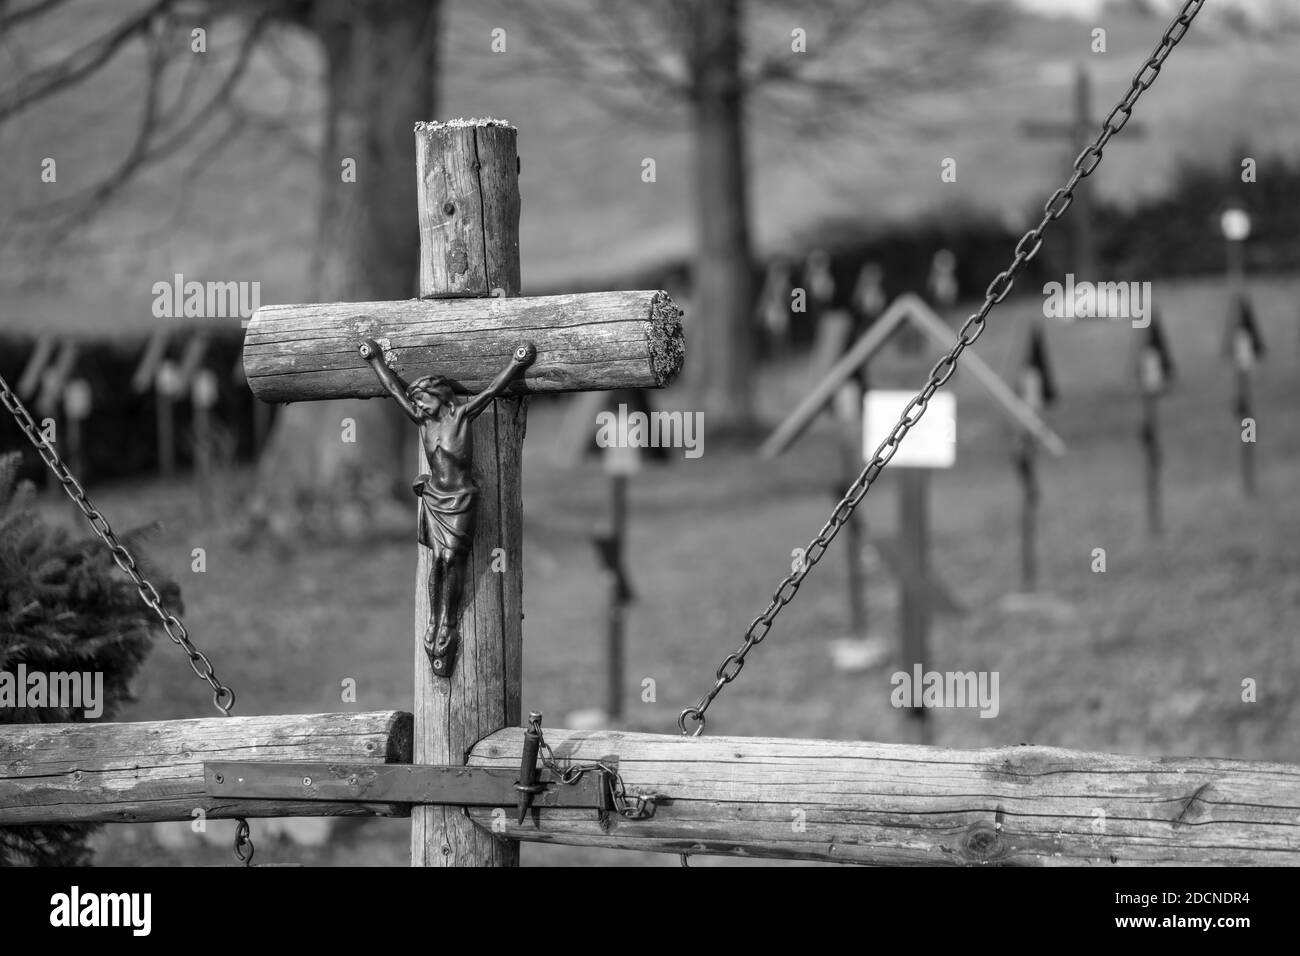 Gedenkfriedhof der 1. Weltkrieg Opfer von Österreich Ungarn, Russland Soldaten. Der Friedhof befindet sich in der Slowakischen republik, Bardejov Stadt Stockfoto